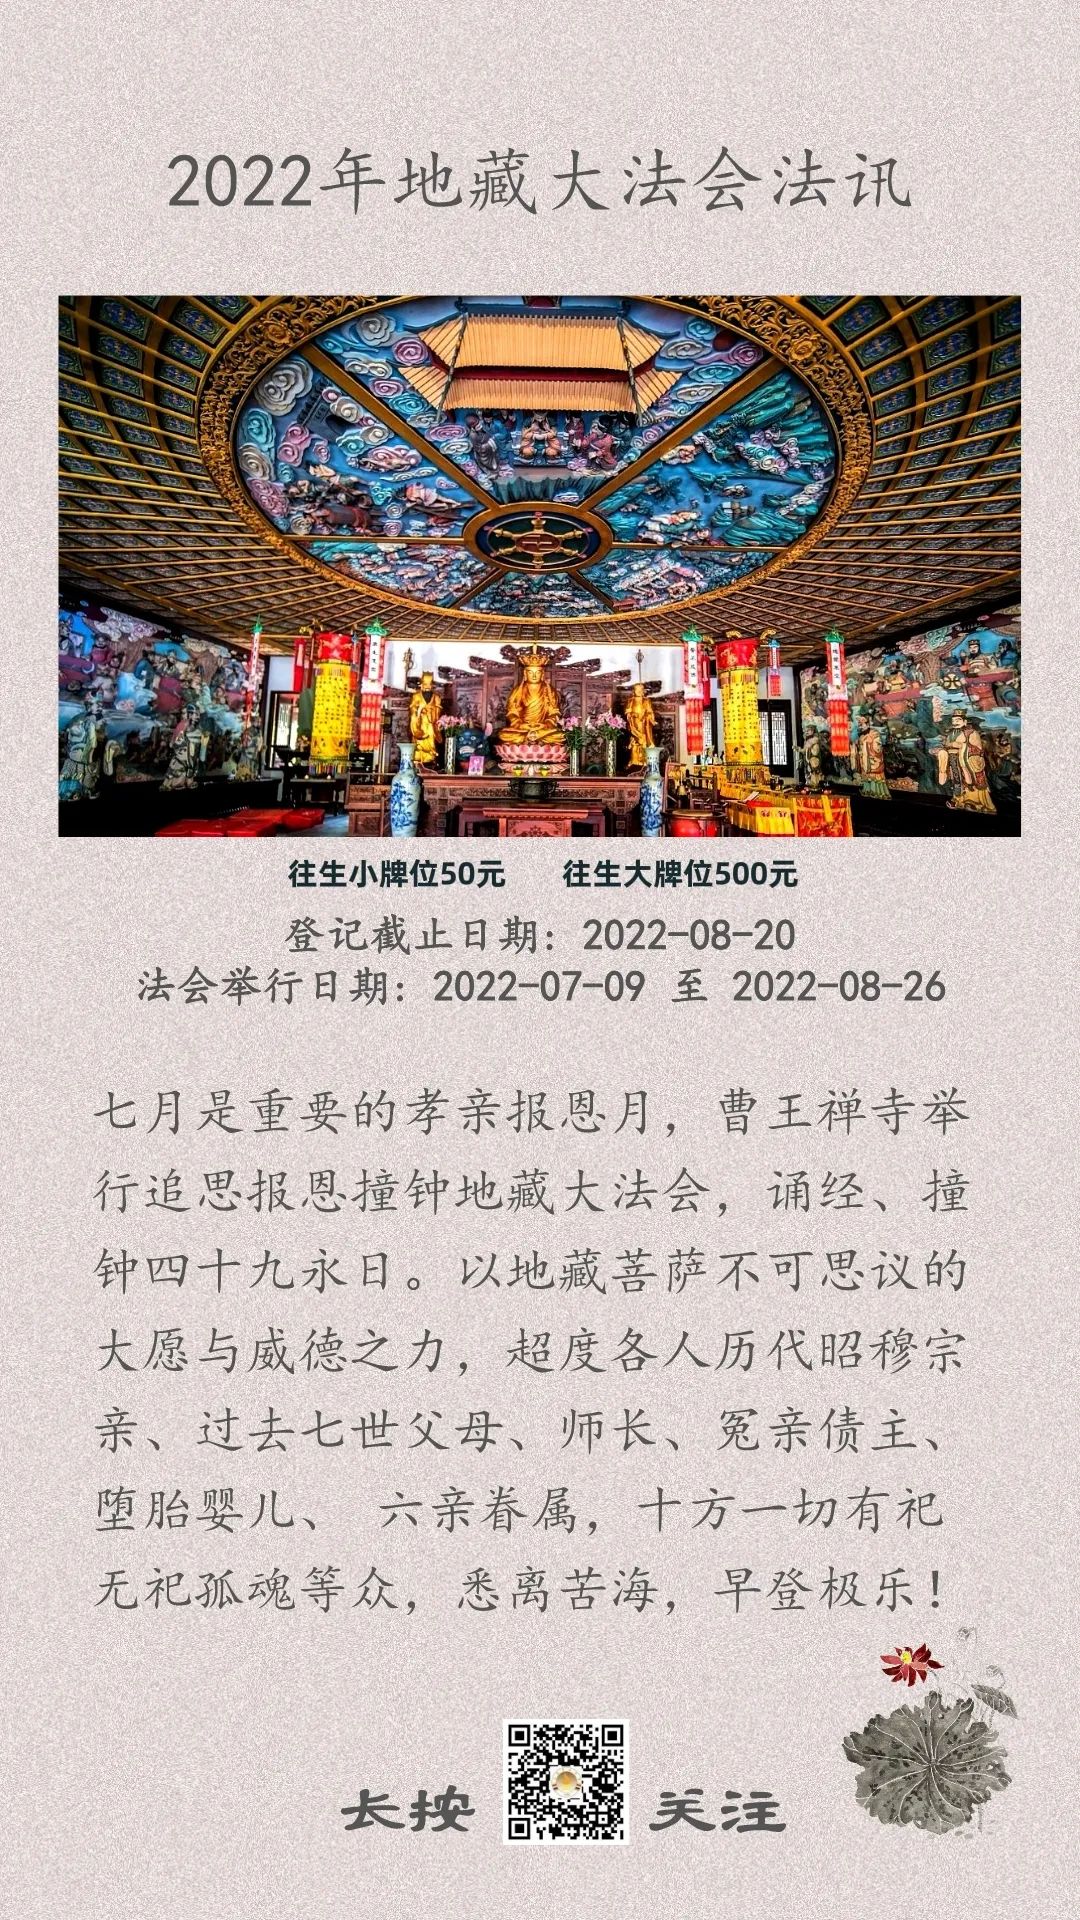 2022年地藏大法会法讯